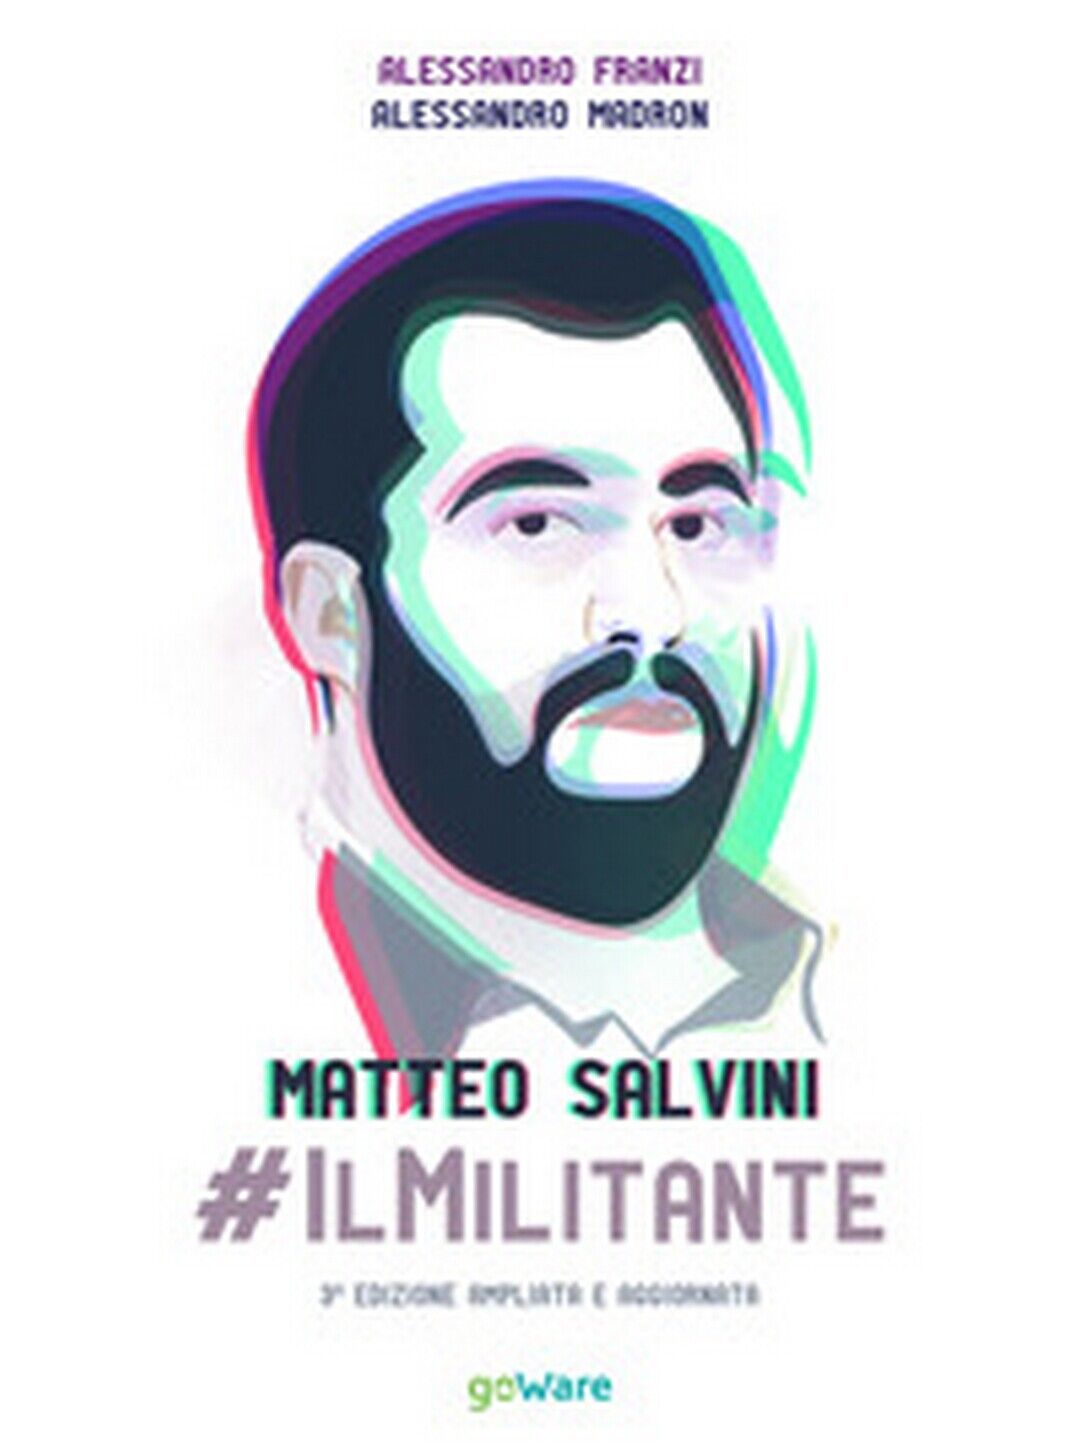 Matteo Salvini #ilMilitante  di Alessandro Franzi, Alessandro Madron,  2019